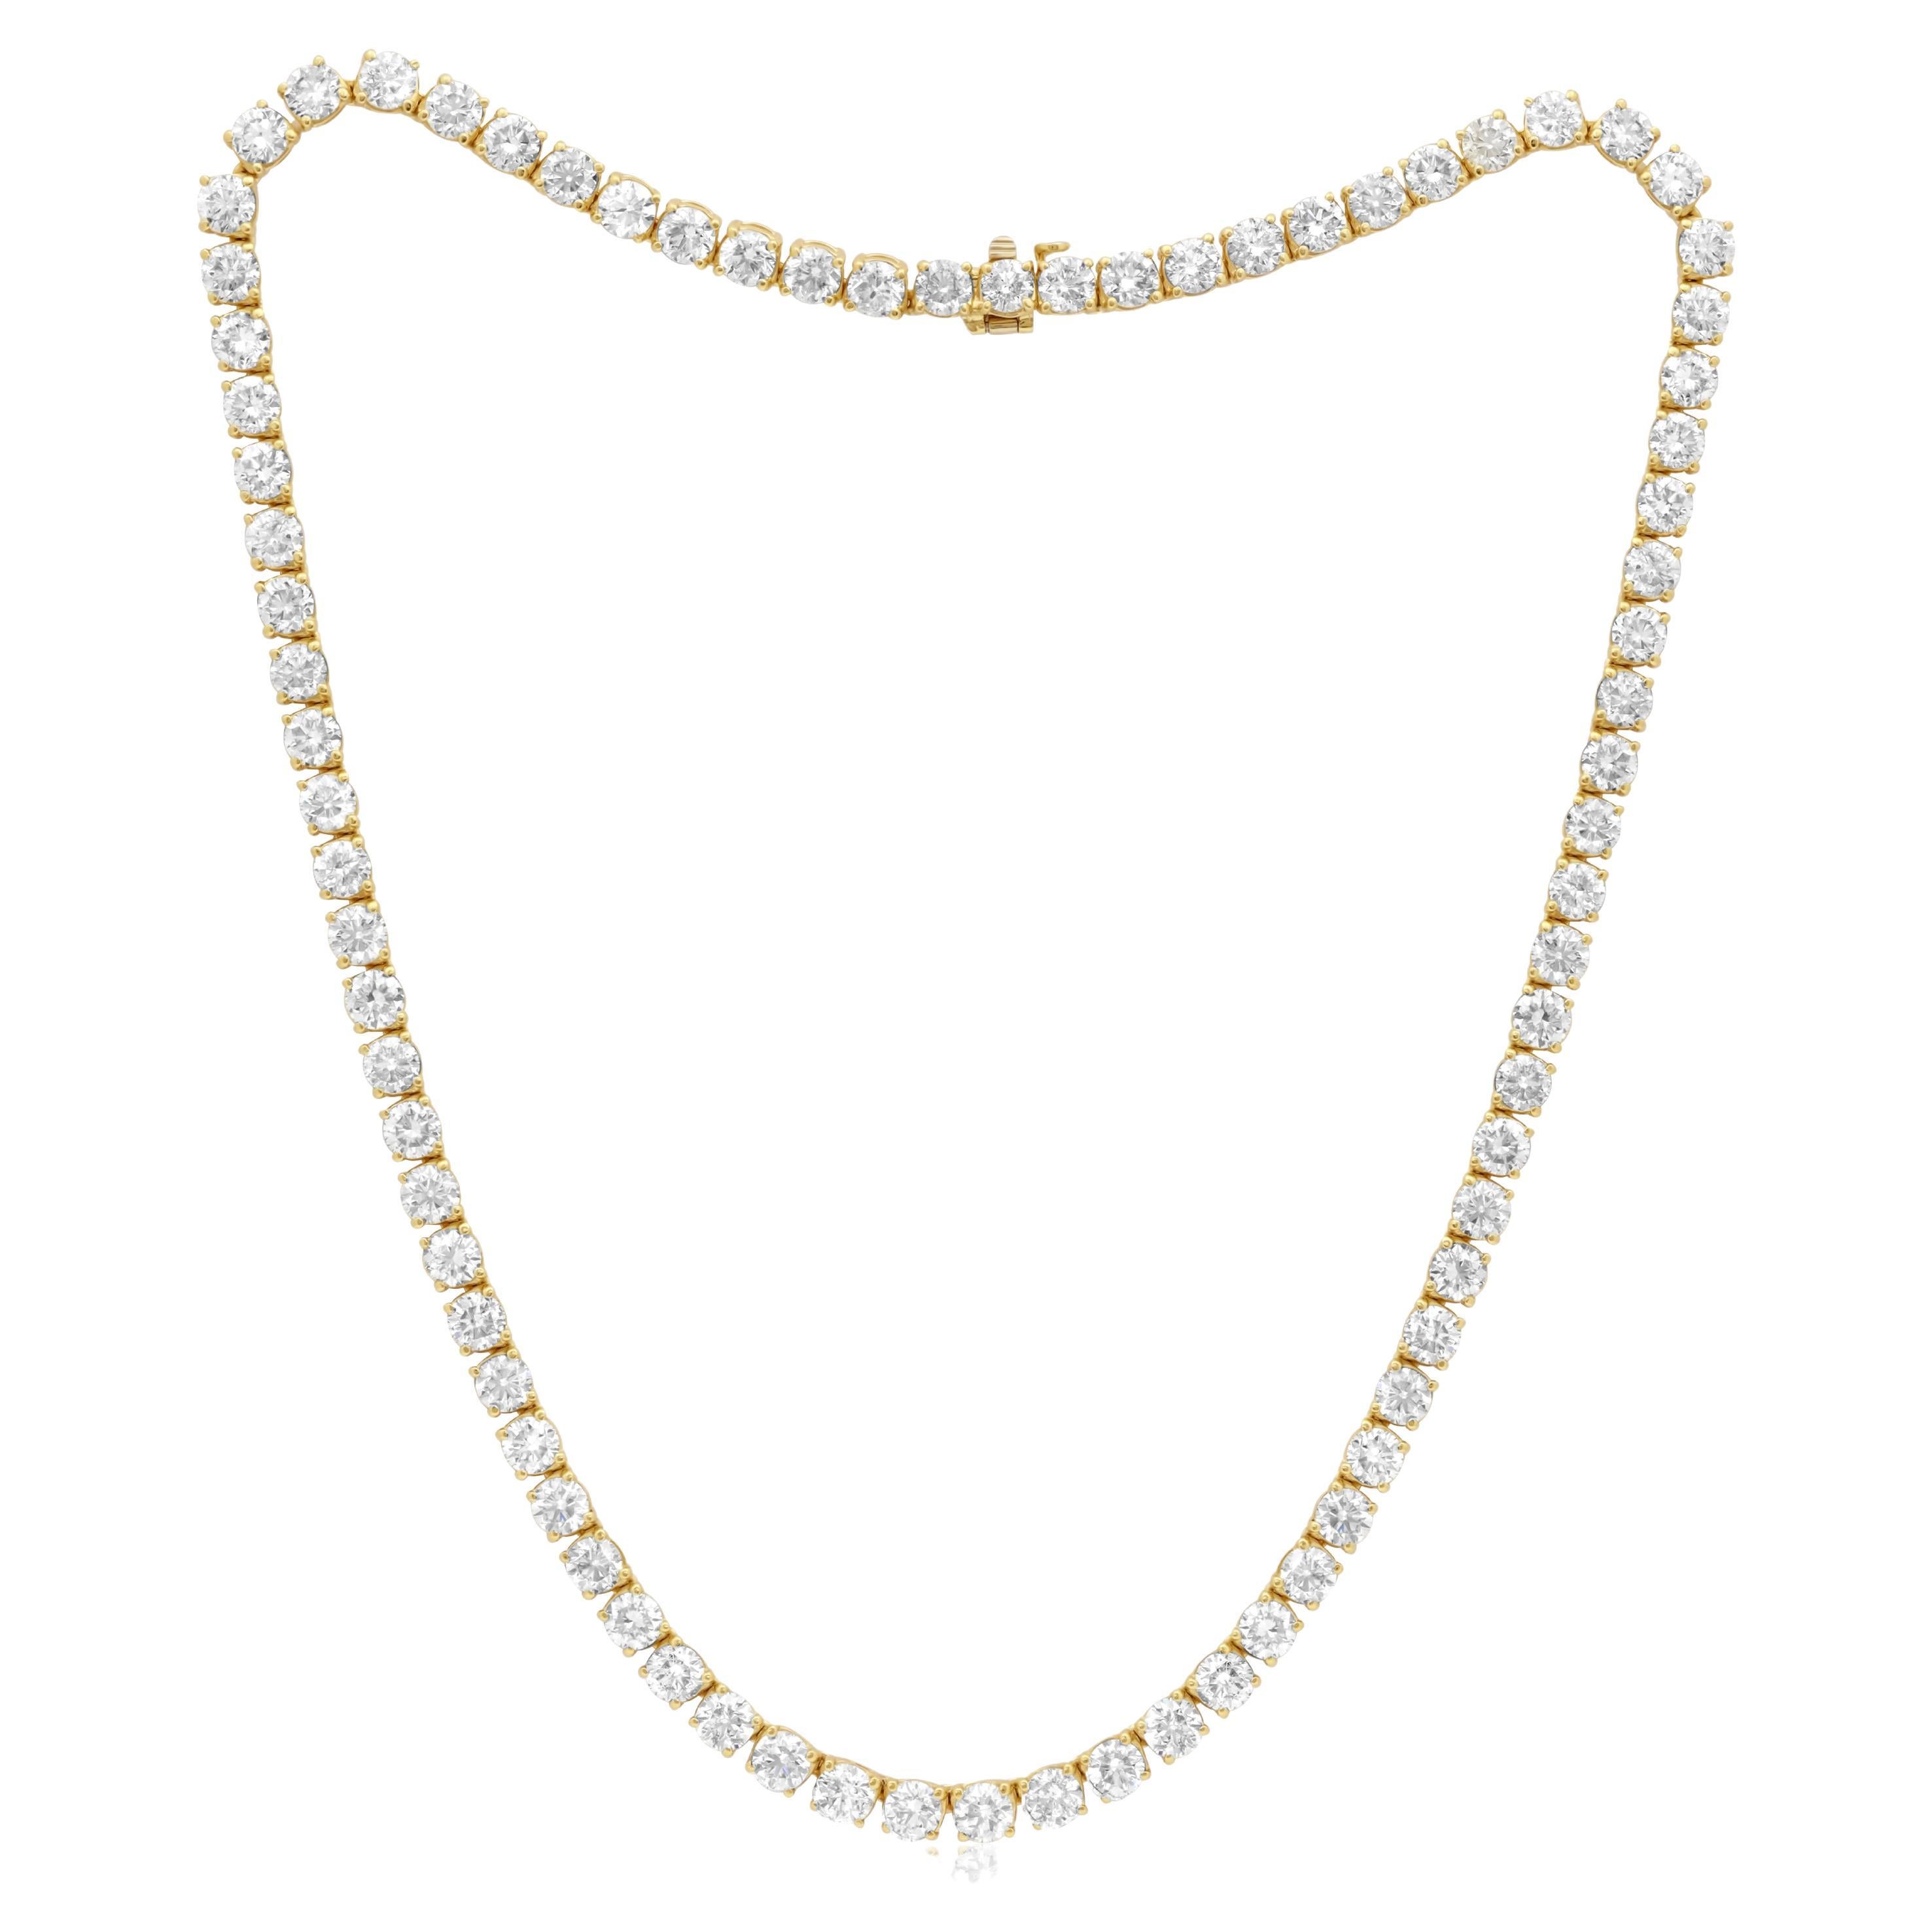 Diana M. 28.70 Carat Diamond Tennis Necklace For Sale